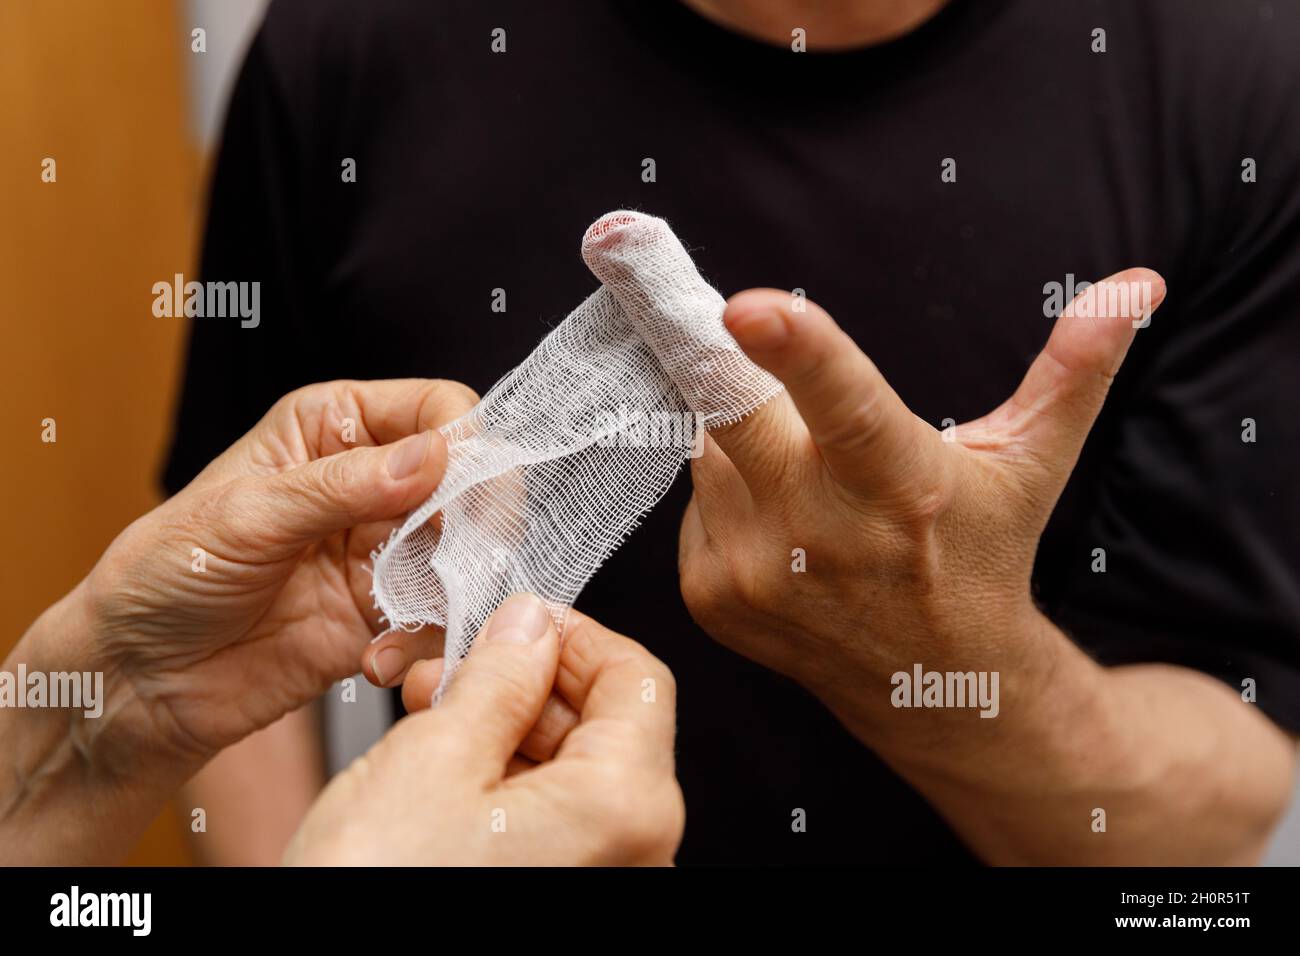 Applicare un bendaggio alla ferita del dito di un uomo. L'uomo trascurò le precauzioni e gli tagliò la mano. Trauma domestico. Lesioni da lavoro. Foto Stock